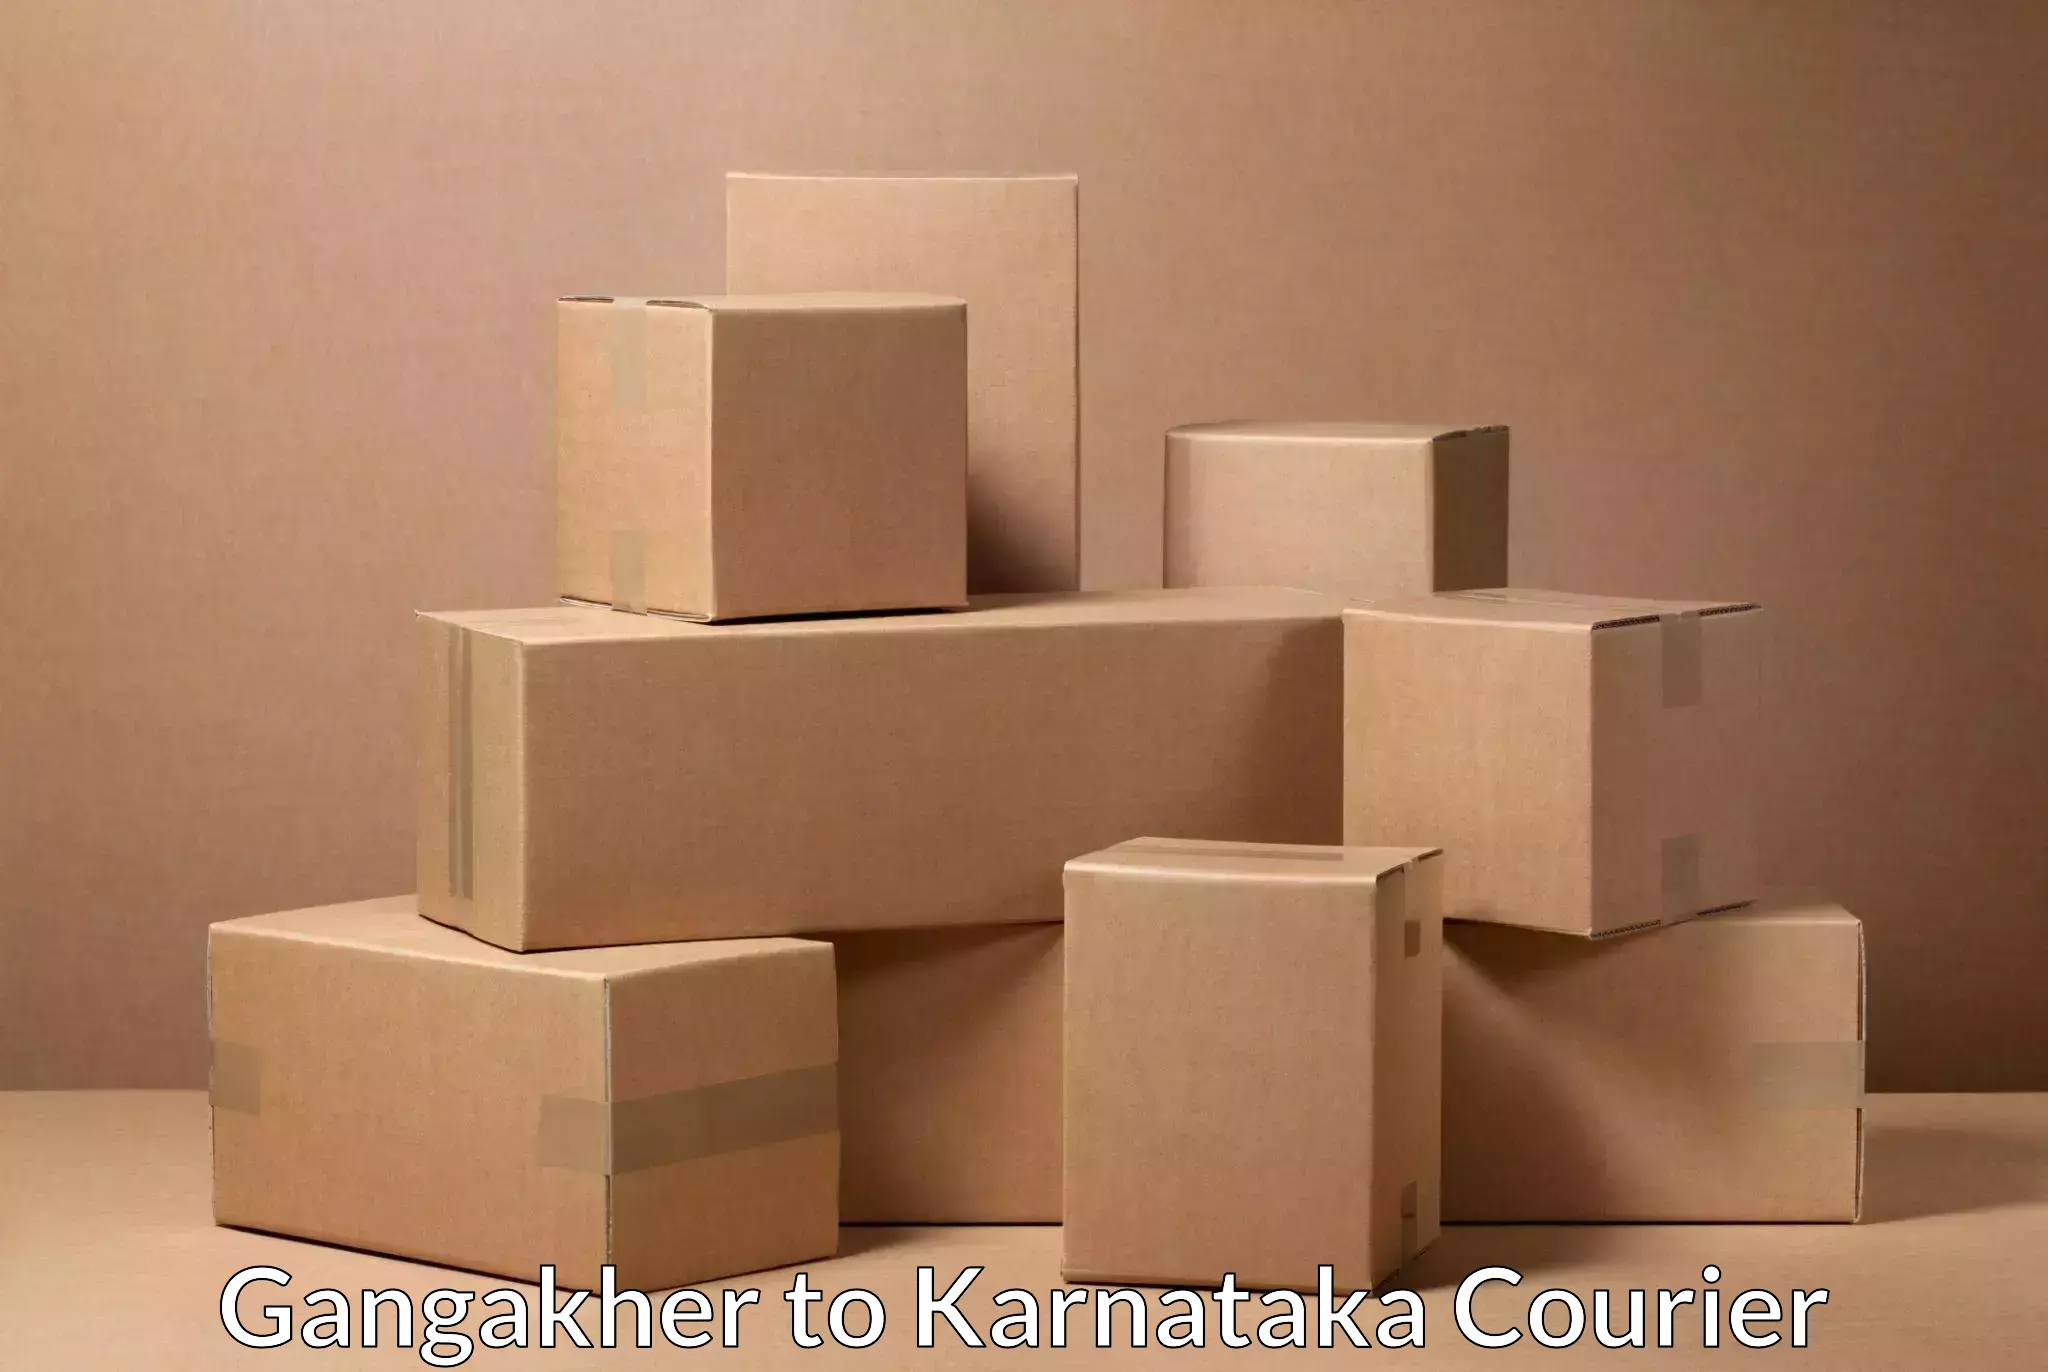 Sustainable shipping practices Gangakher to Karnataka